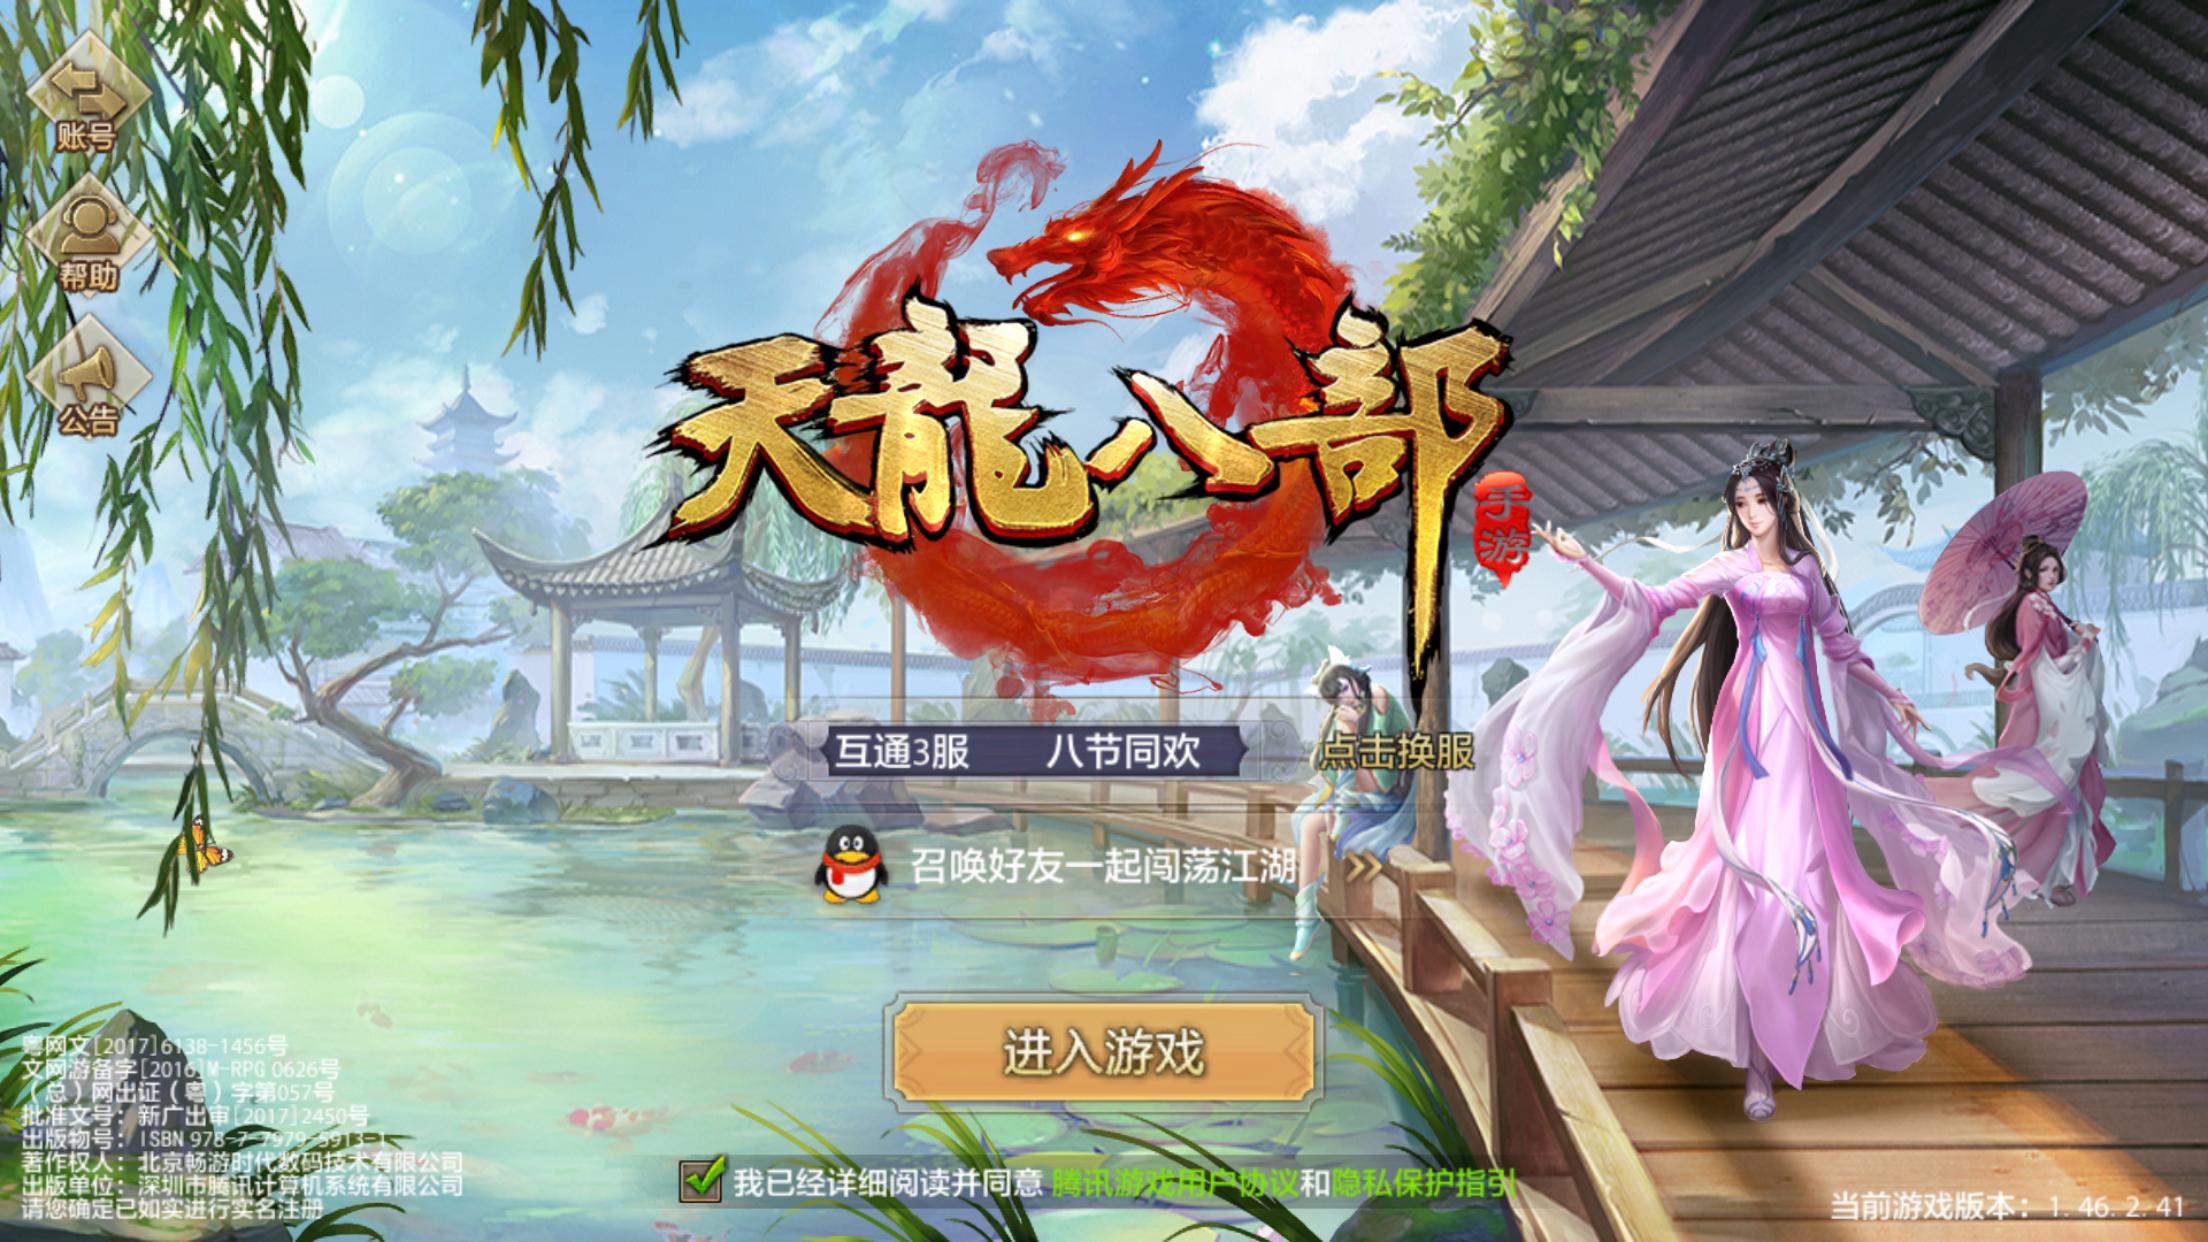 重燃江湖激情天龙八部sf发布网站55游戏资讯攻略